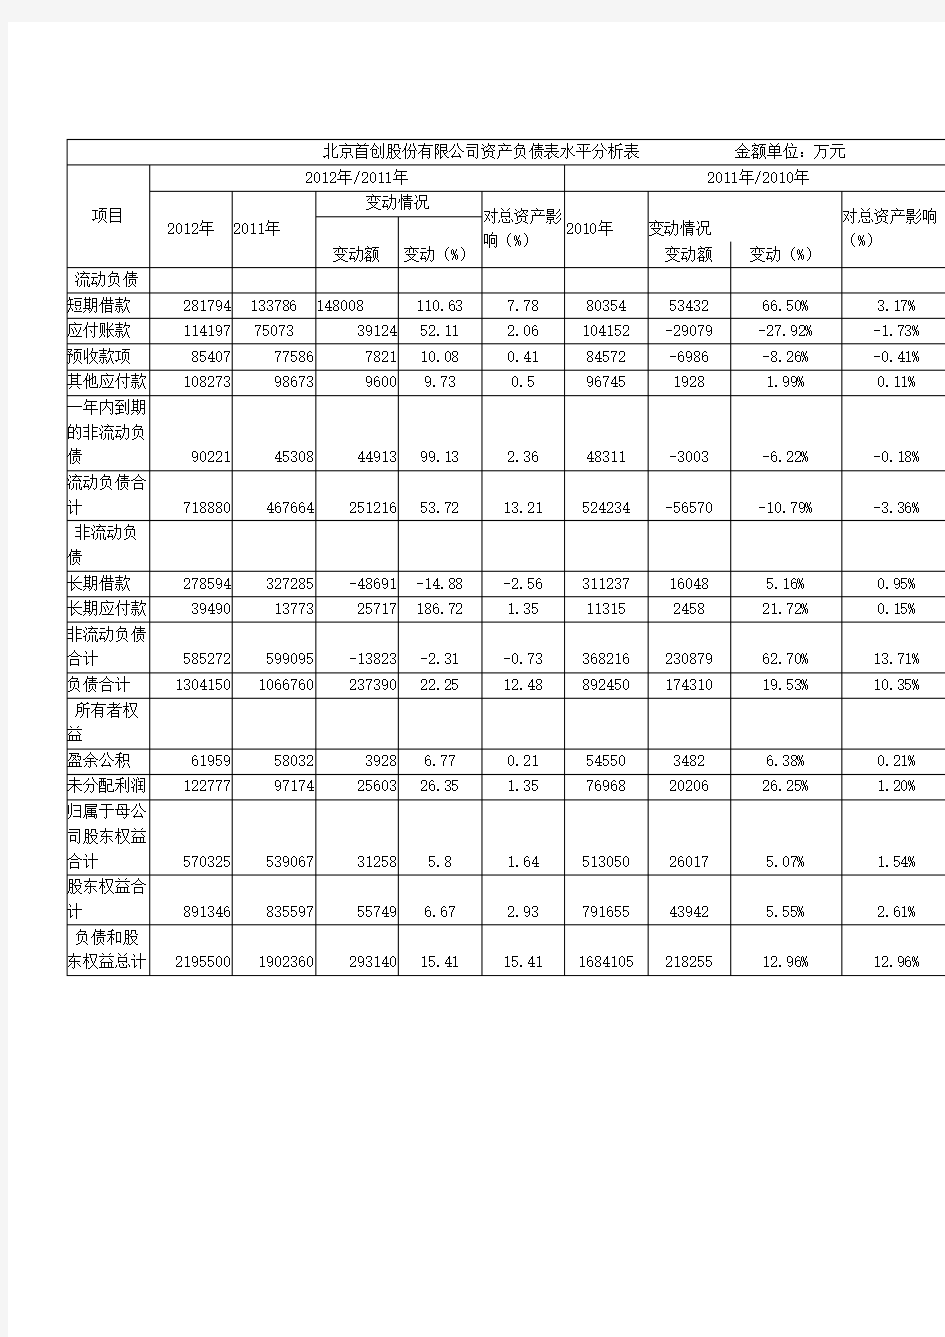 北京首创股份有限公司资产负债表水平分析表